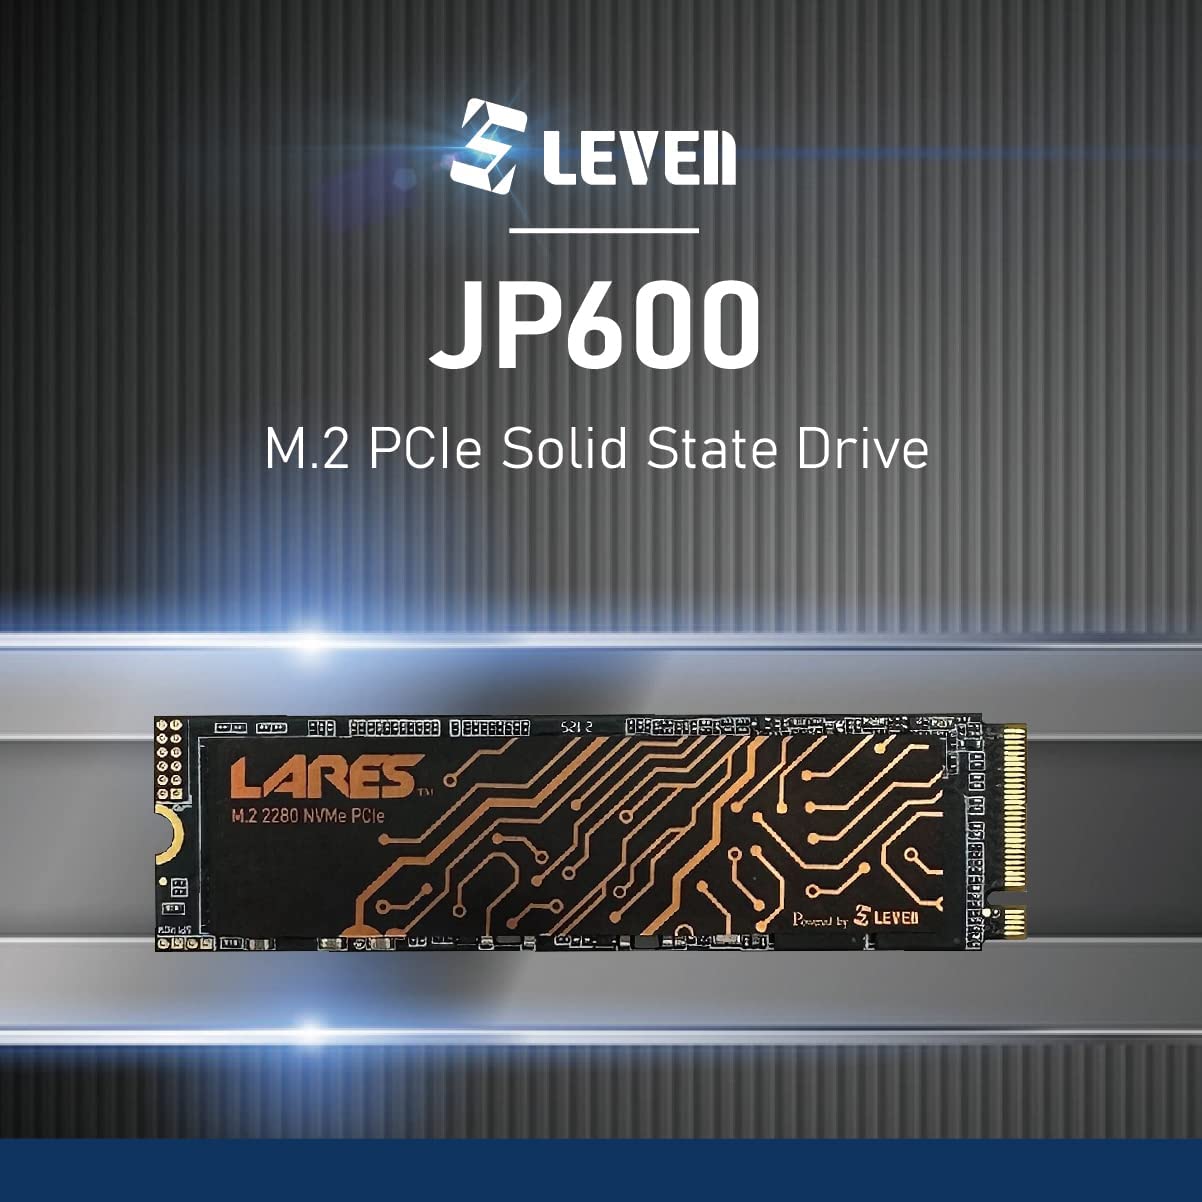 台北國際電腦展-產品資訊-LEVEN JP600 4TB PCIe Gen3-傑佳國際股份有限公司